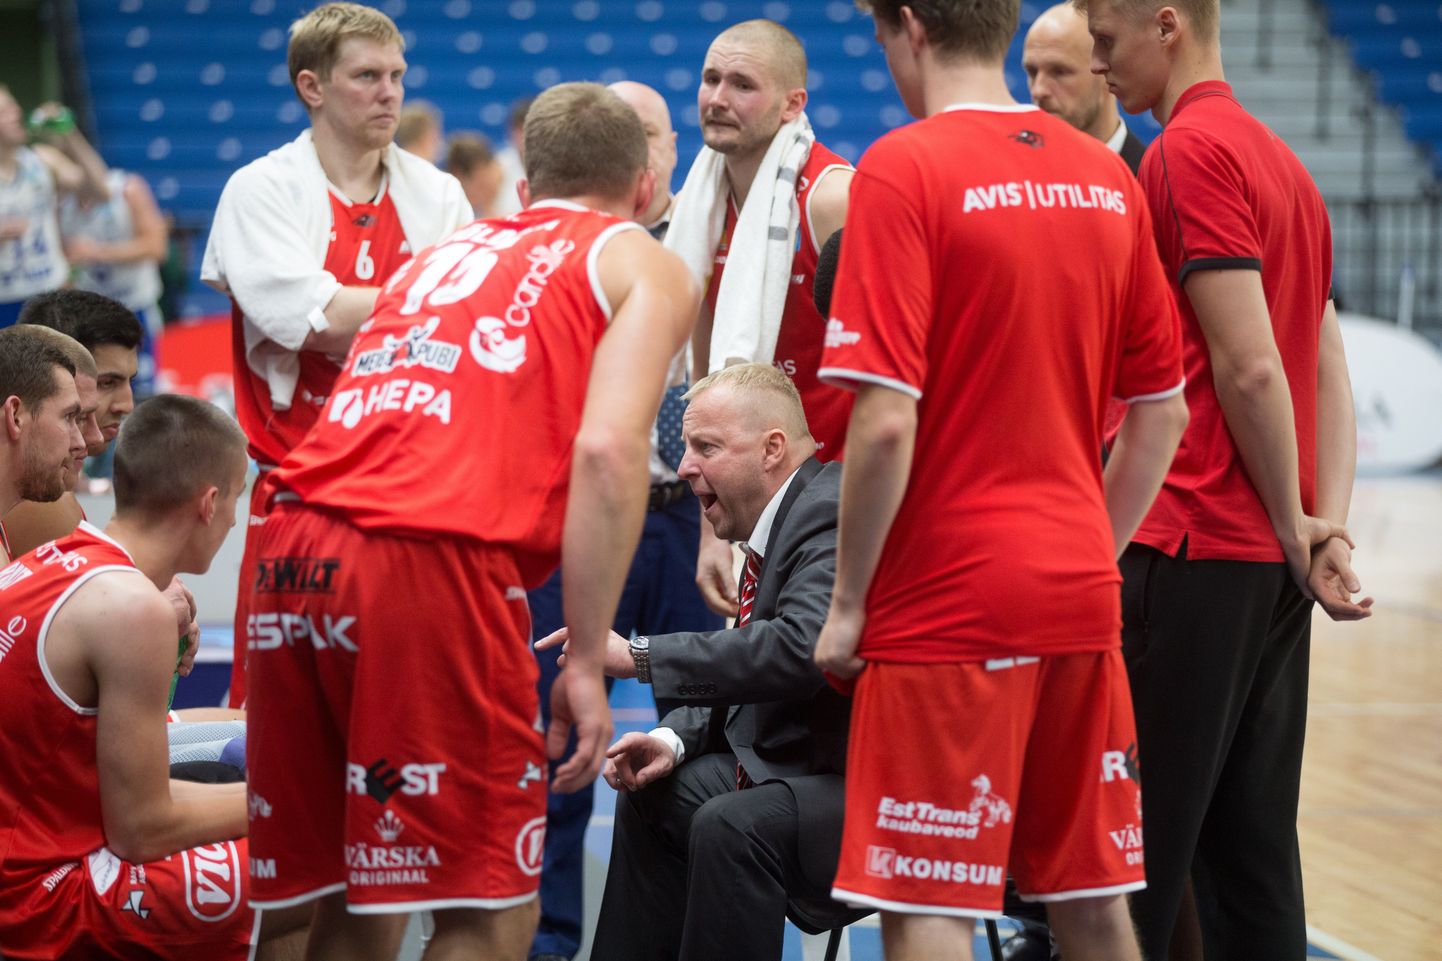 Скандалом завершился матч Балтийской баскетбольной лиги между рапласким клубом "Авис Утилитас" и литовским "Витаутасом".